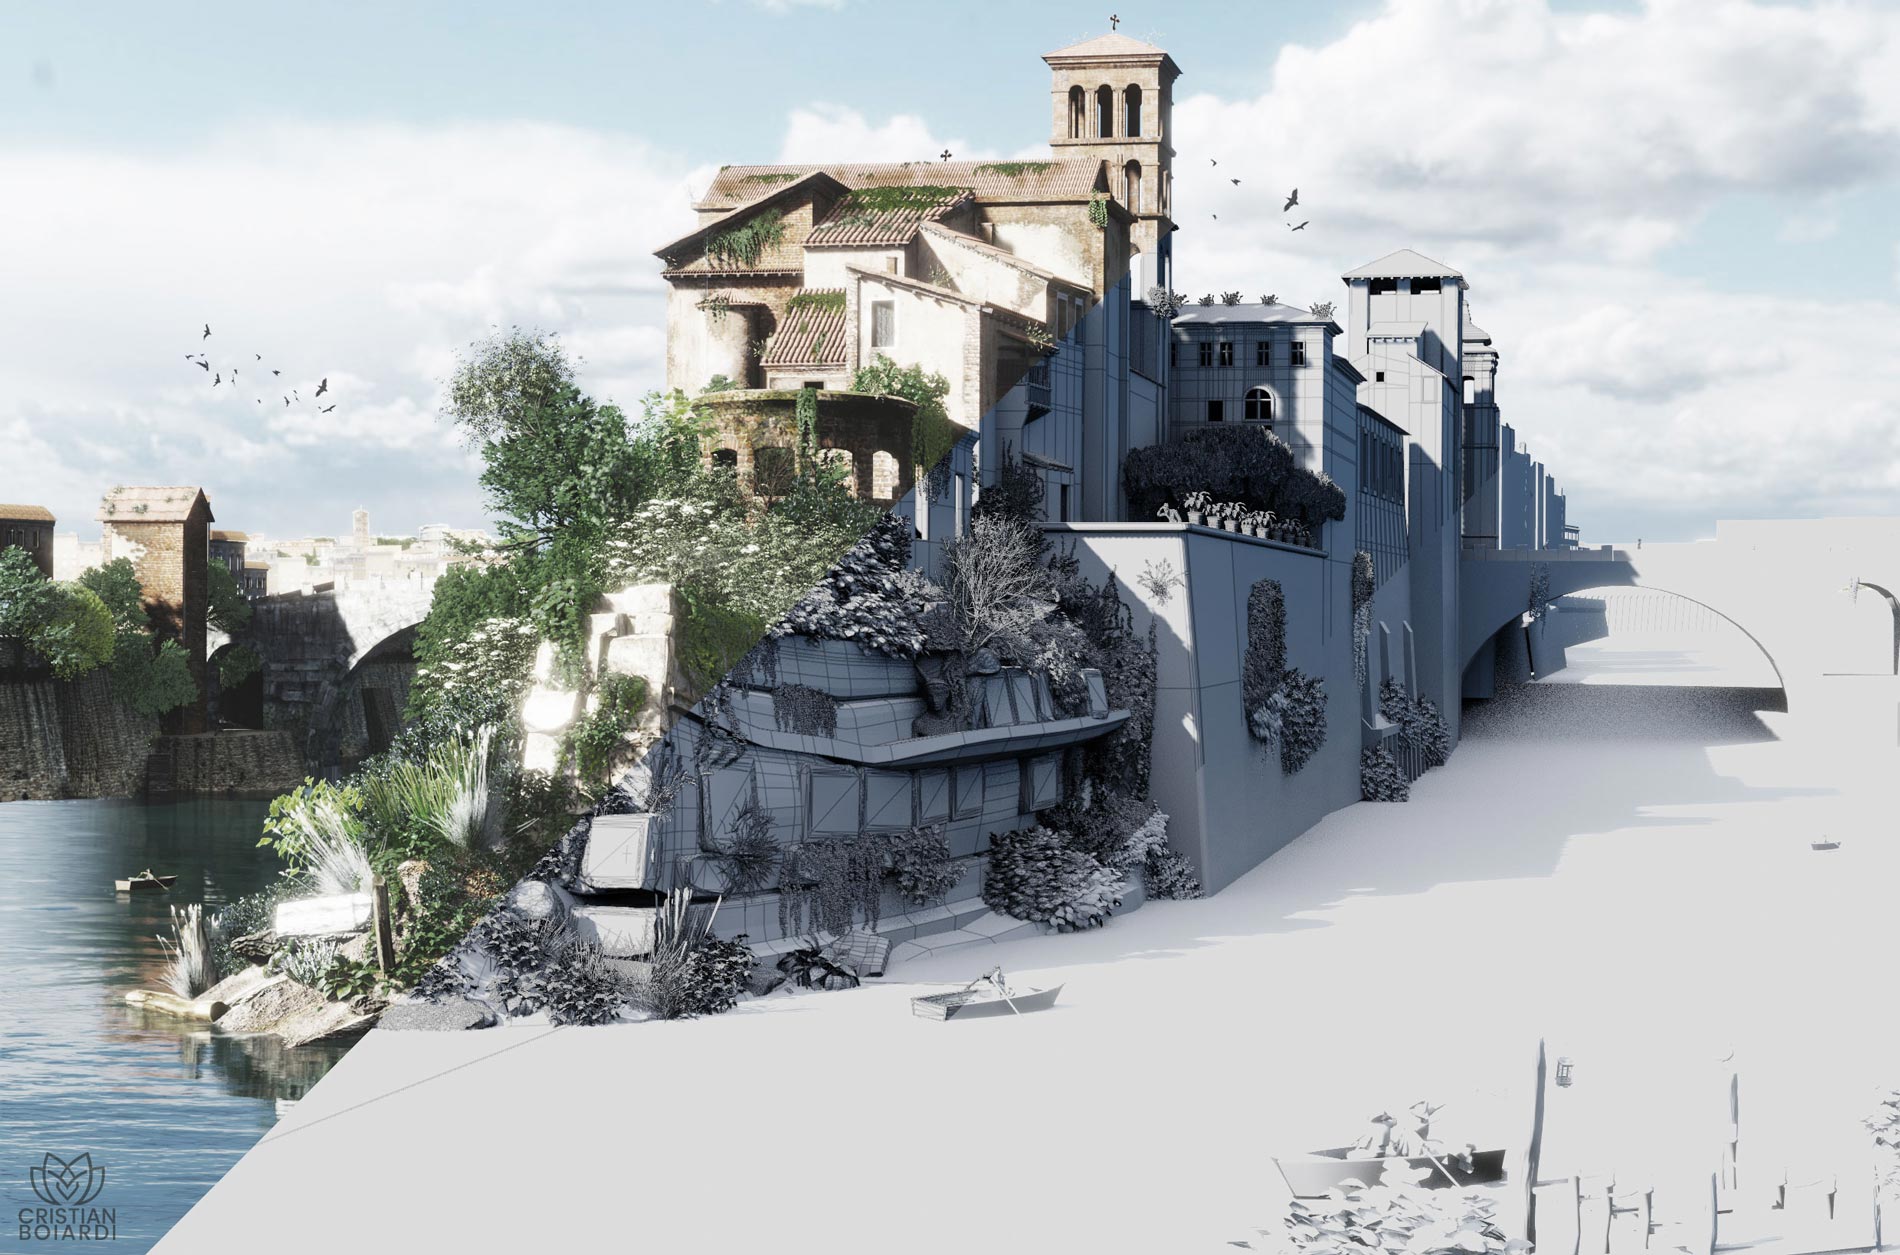 Cristian Boiardi - ricostruzione Isola Tiberina al tempo di Piranesi